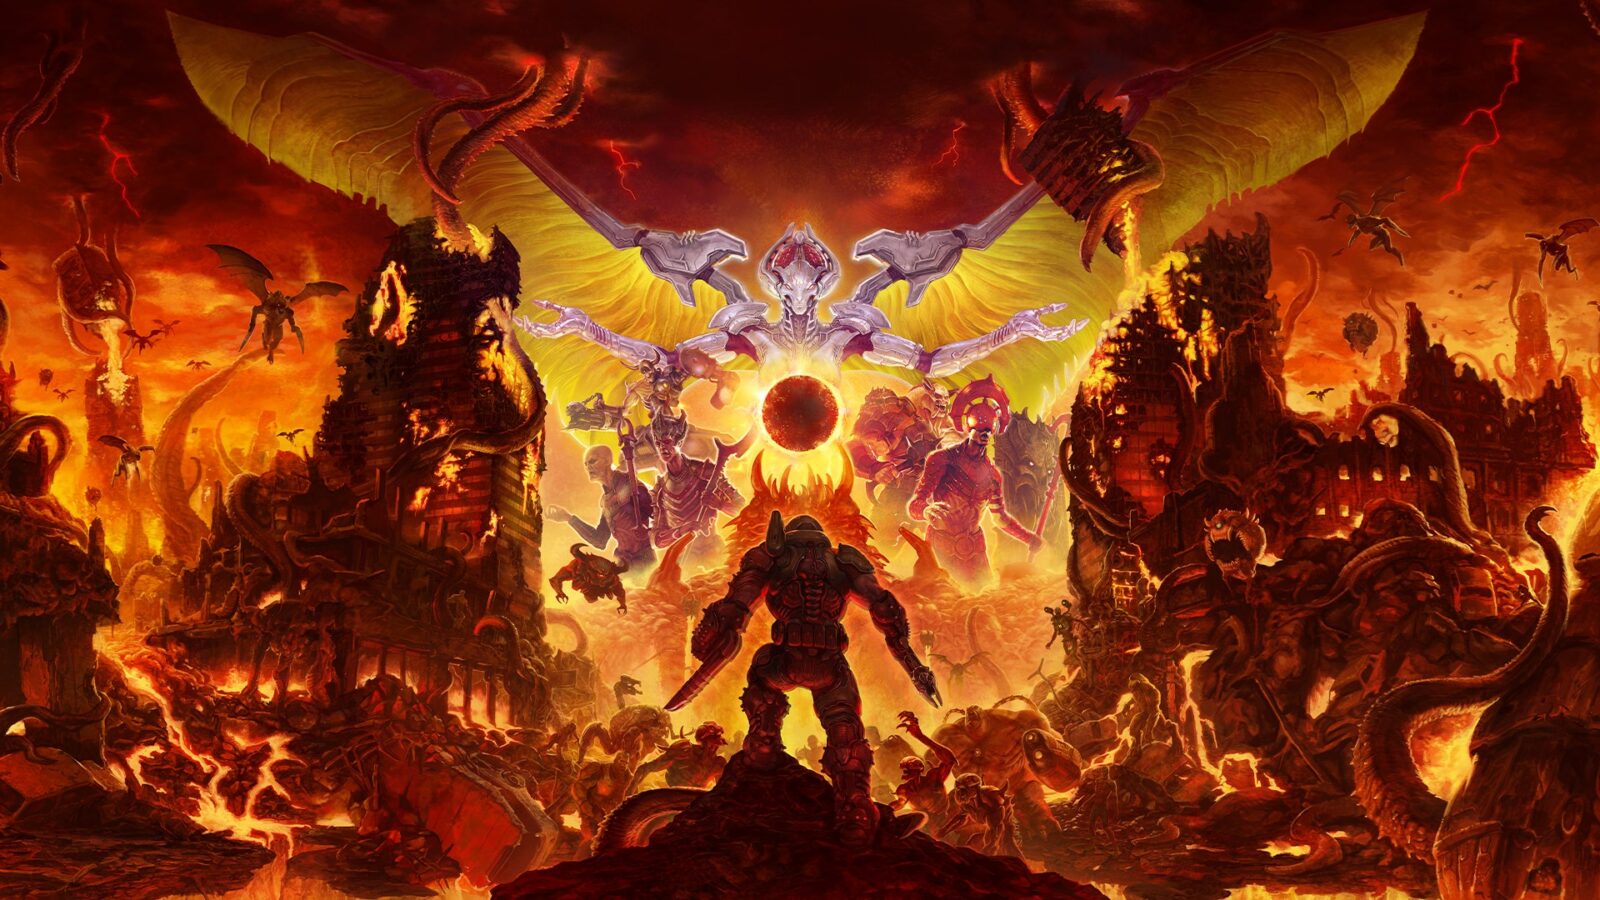 Developer Doom Eternal dibuat tertegun oleh rekor Speedrunner tercepat